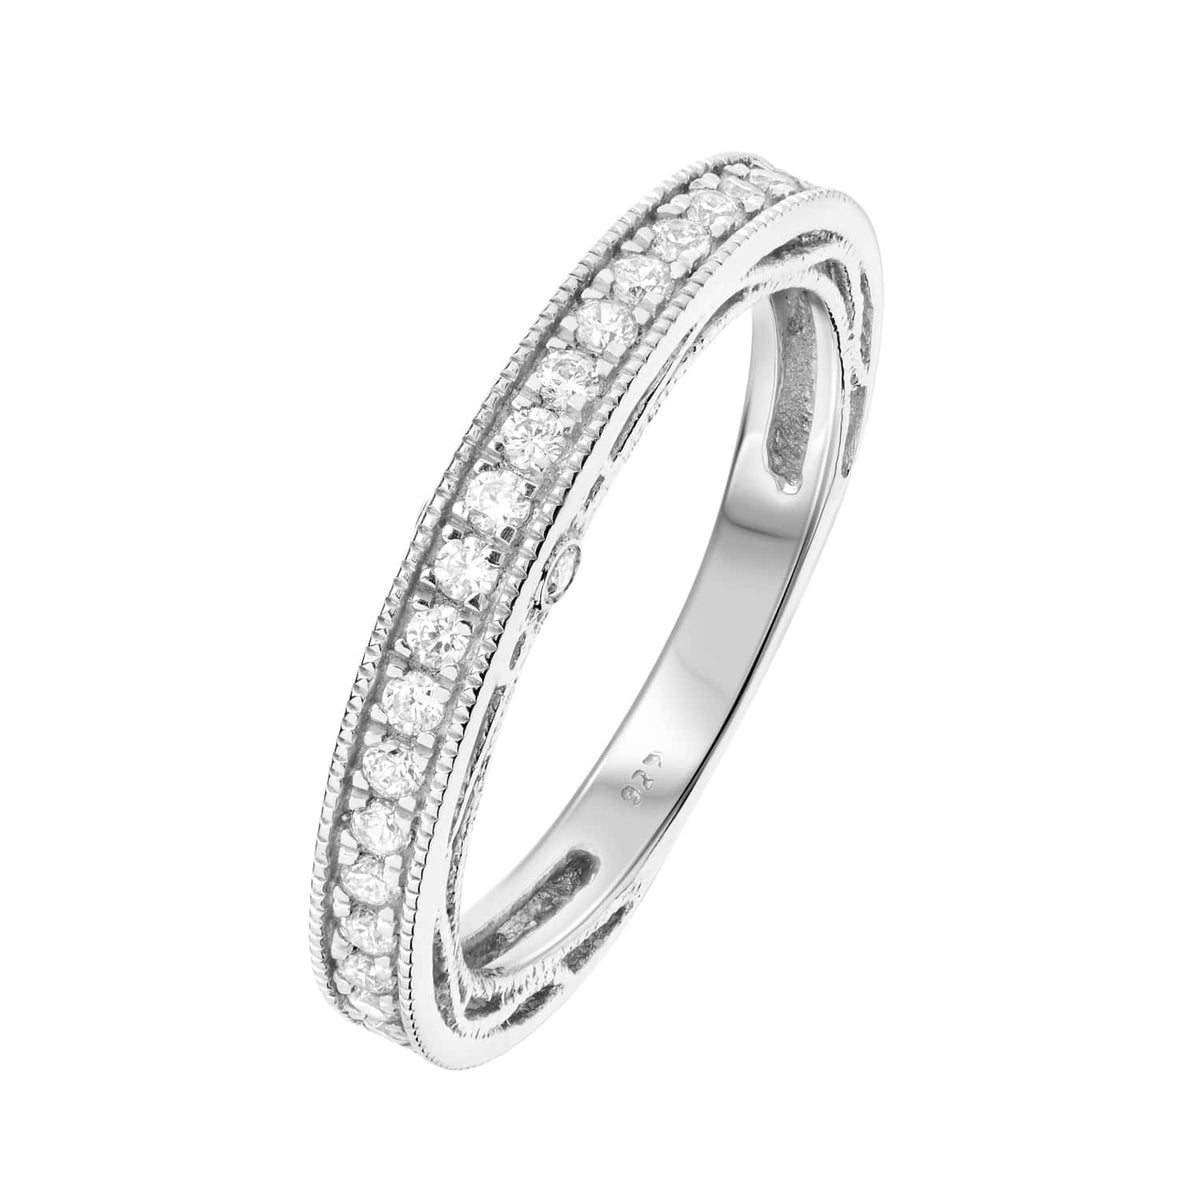 Bespoke Vintage Design Wedding Ring